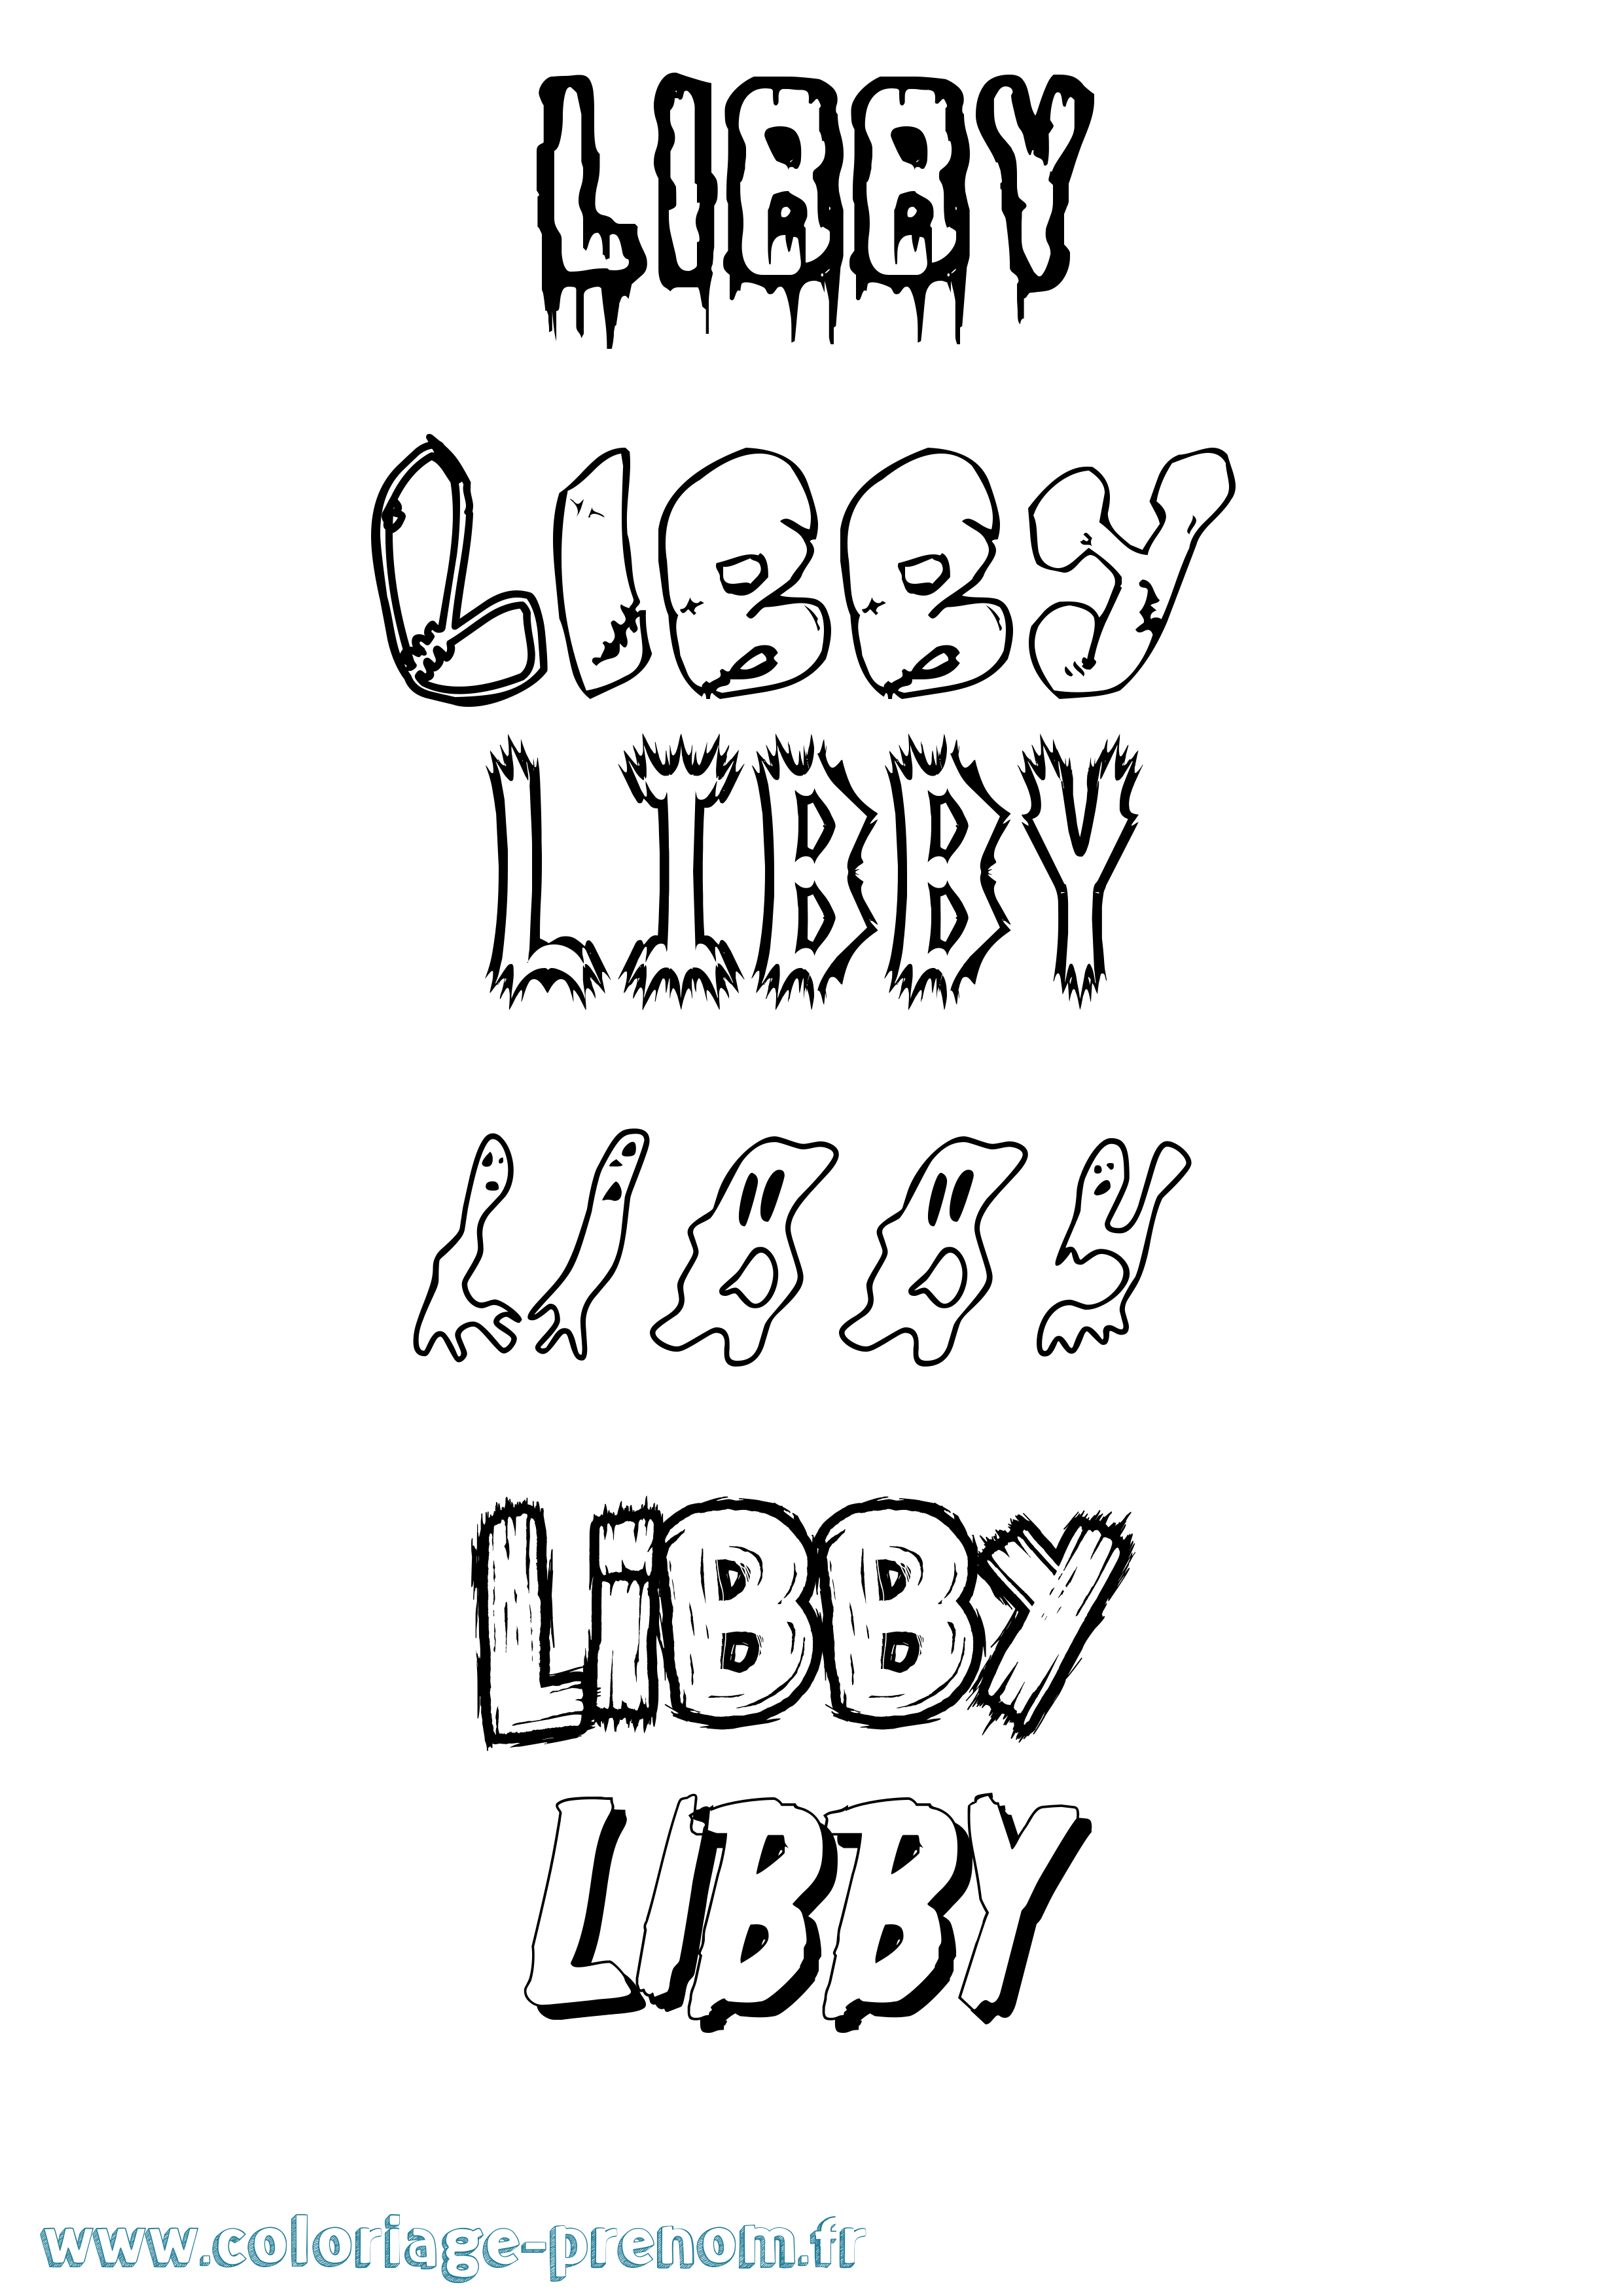 Coloriage prénom Libby Frisson